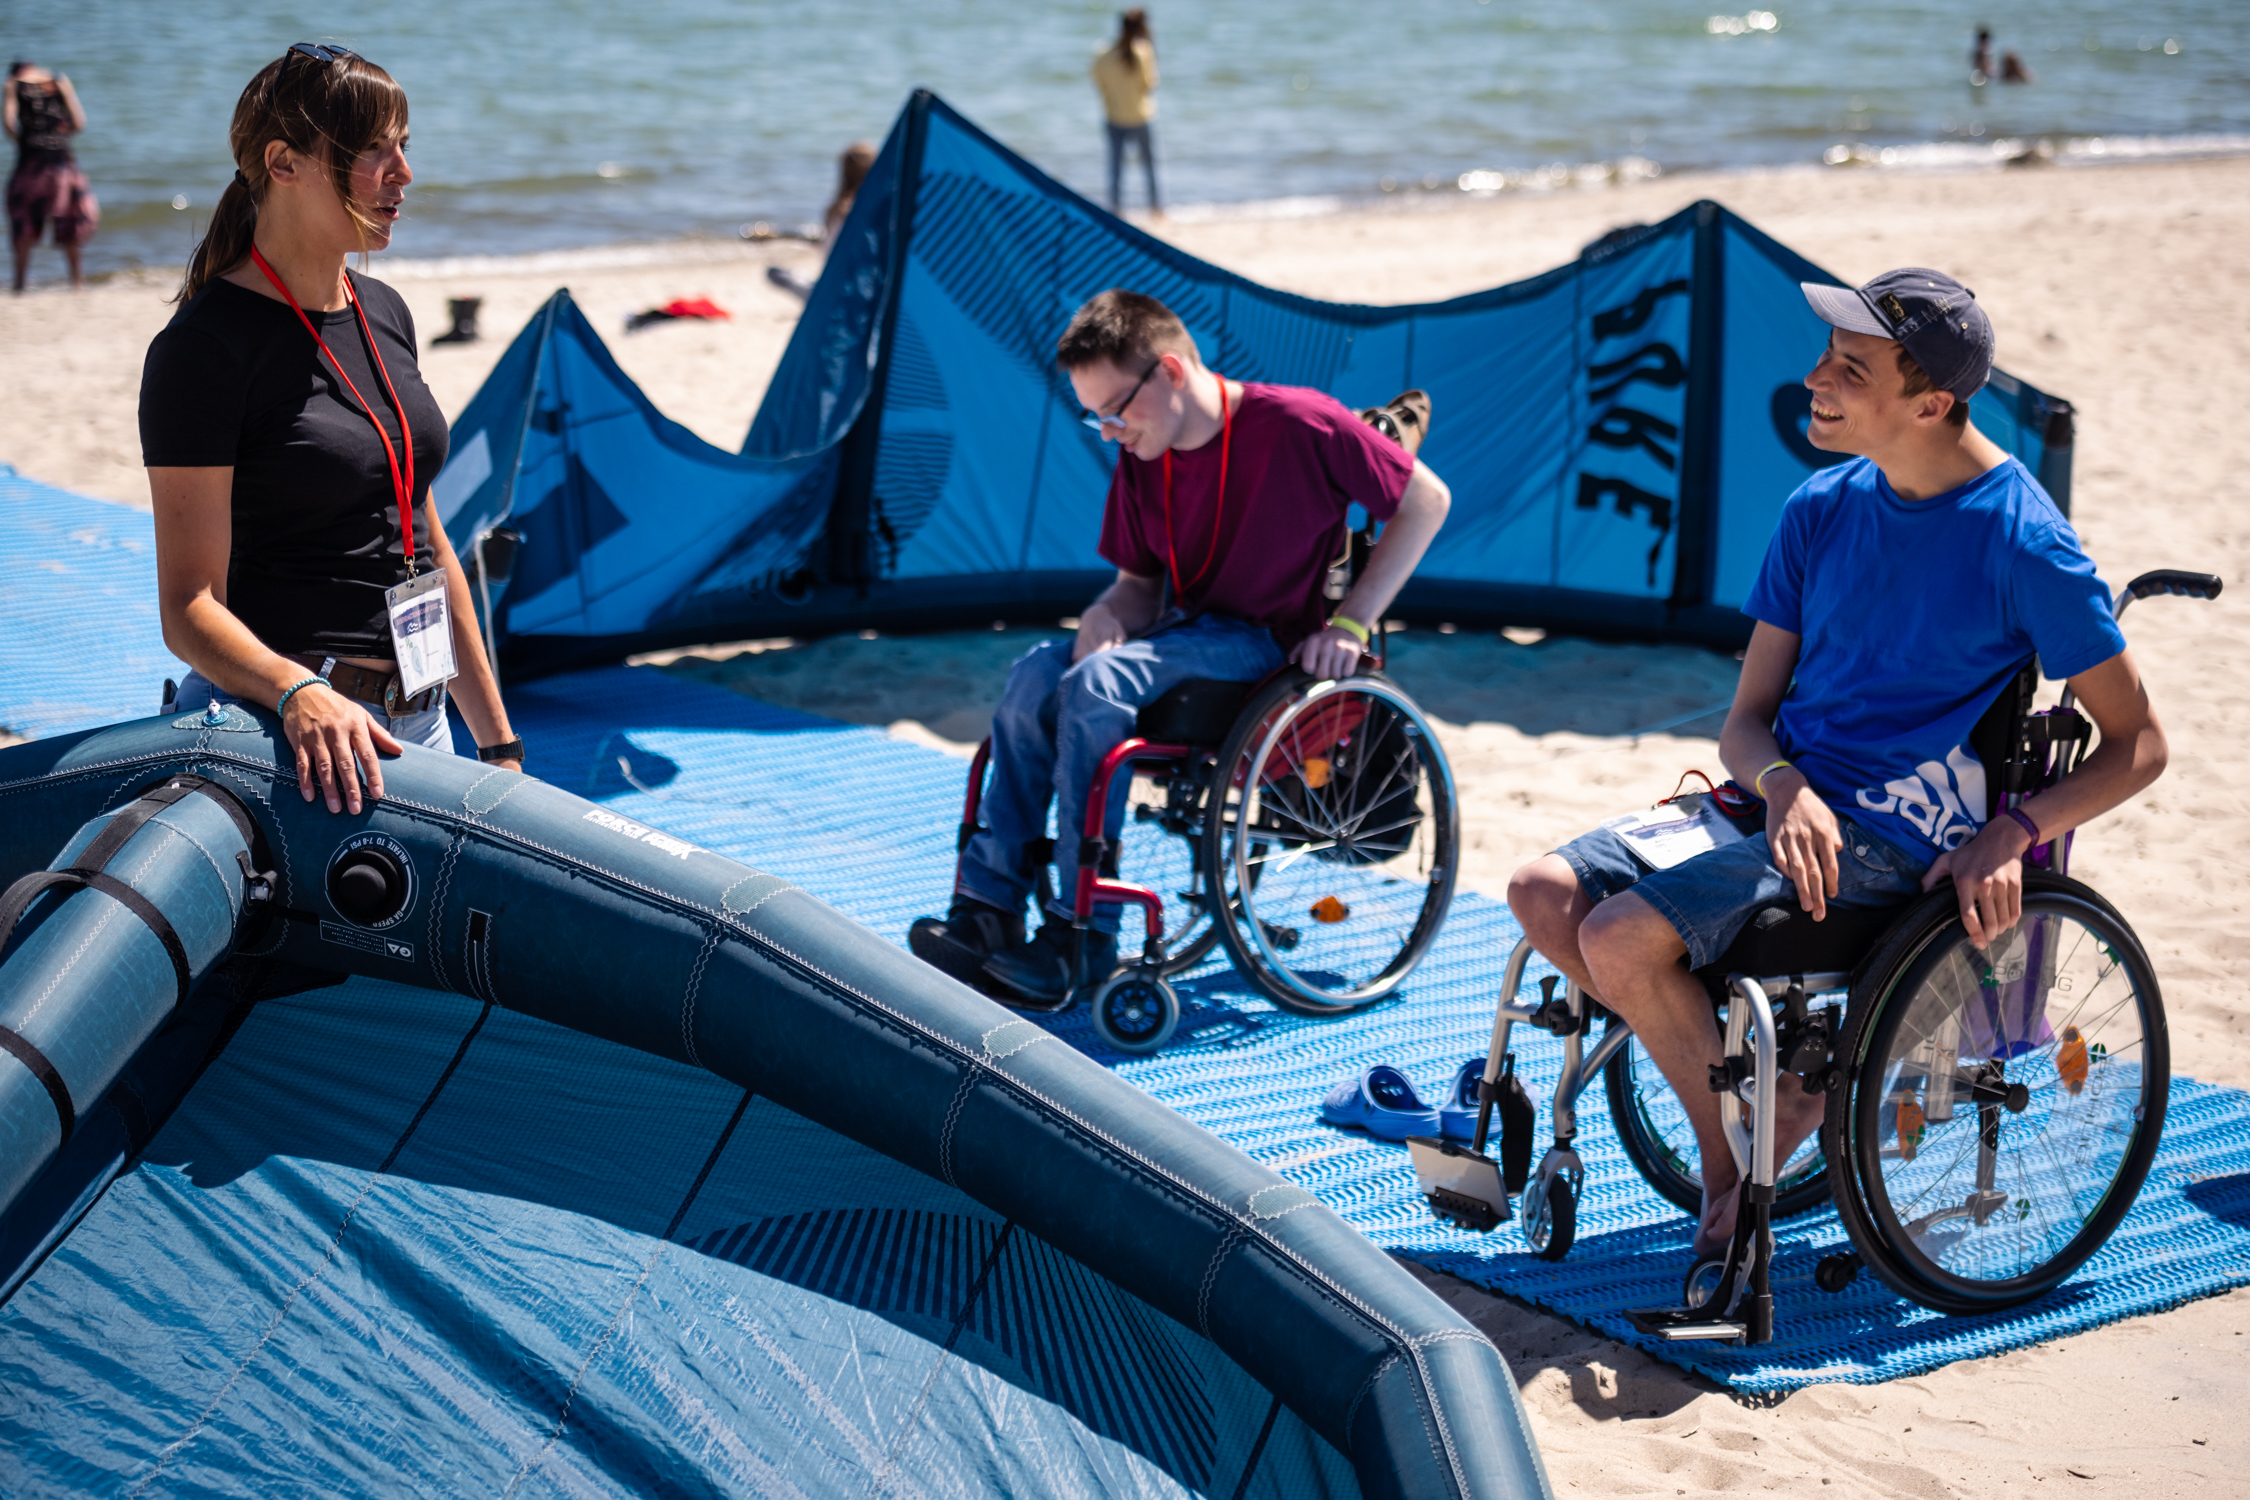 Das Bild zeigt zwei junge Menschen, die einen Rollstuhl nutzen beim Aufbau eines Kit-Drachens am Strand.